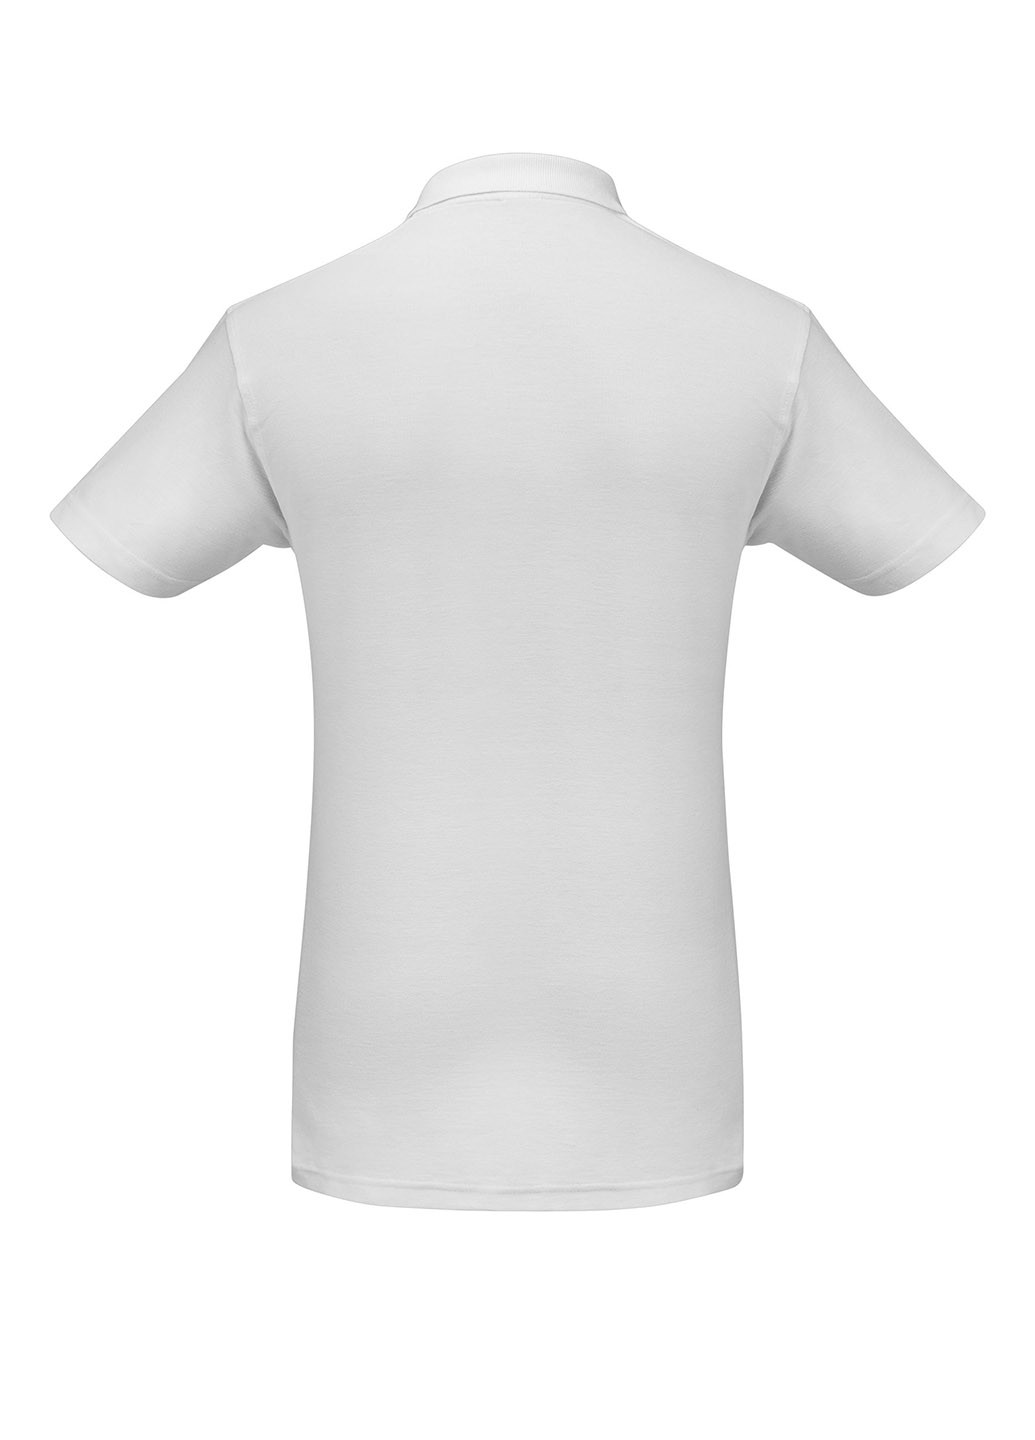 Белая футболка-поло для мужчин B&C однотонная